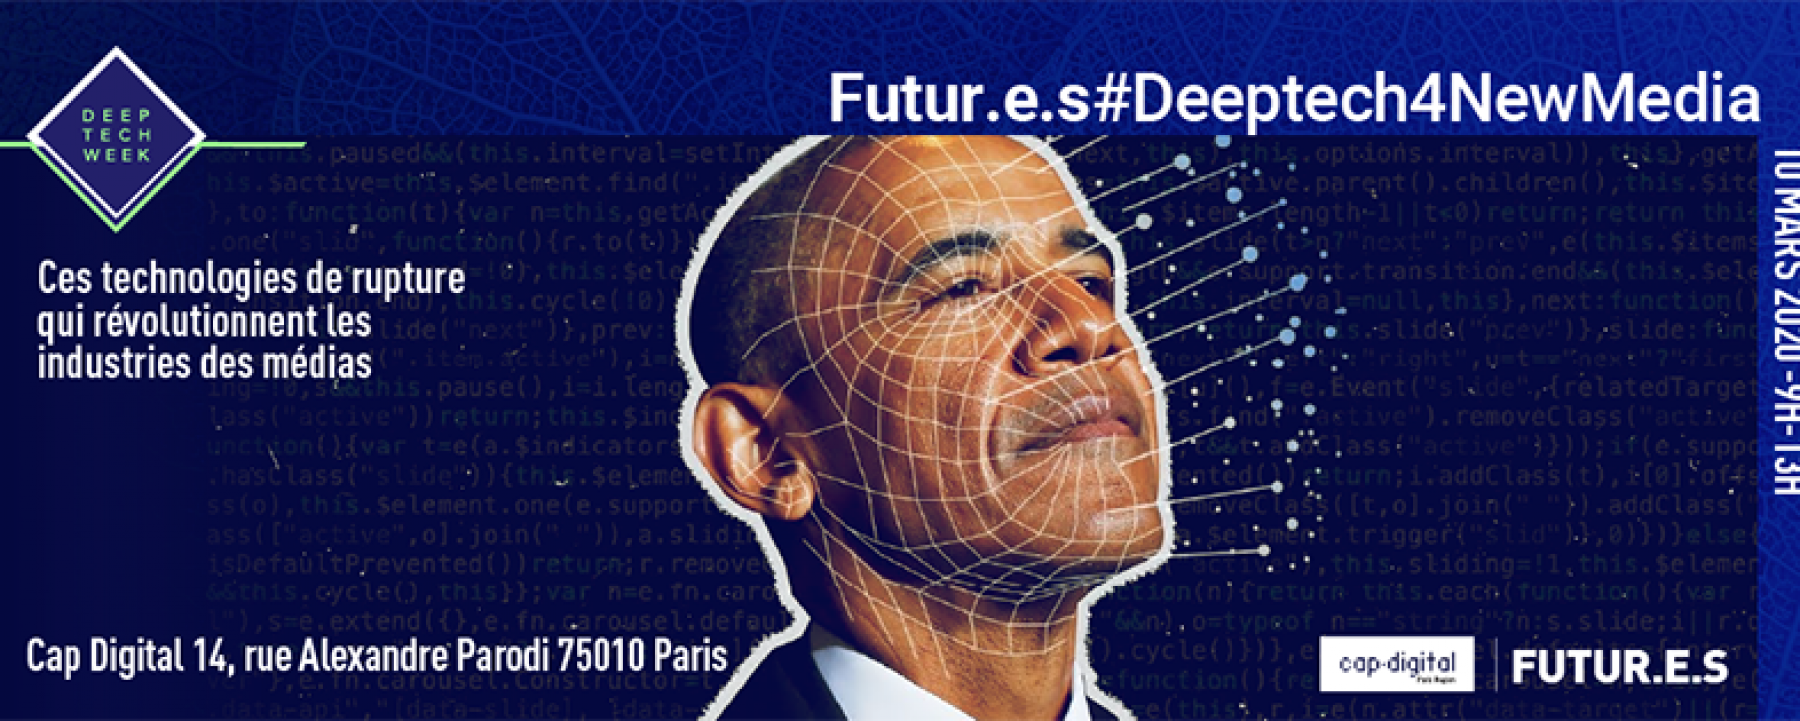 Cap digital Futur.e.s Deep tech for new media 2020 